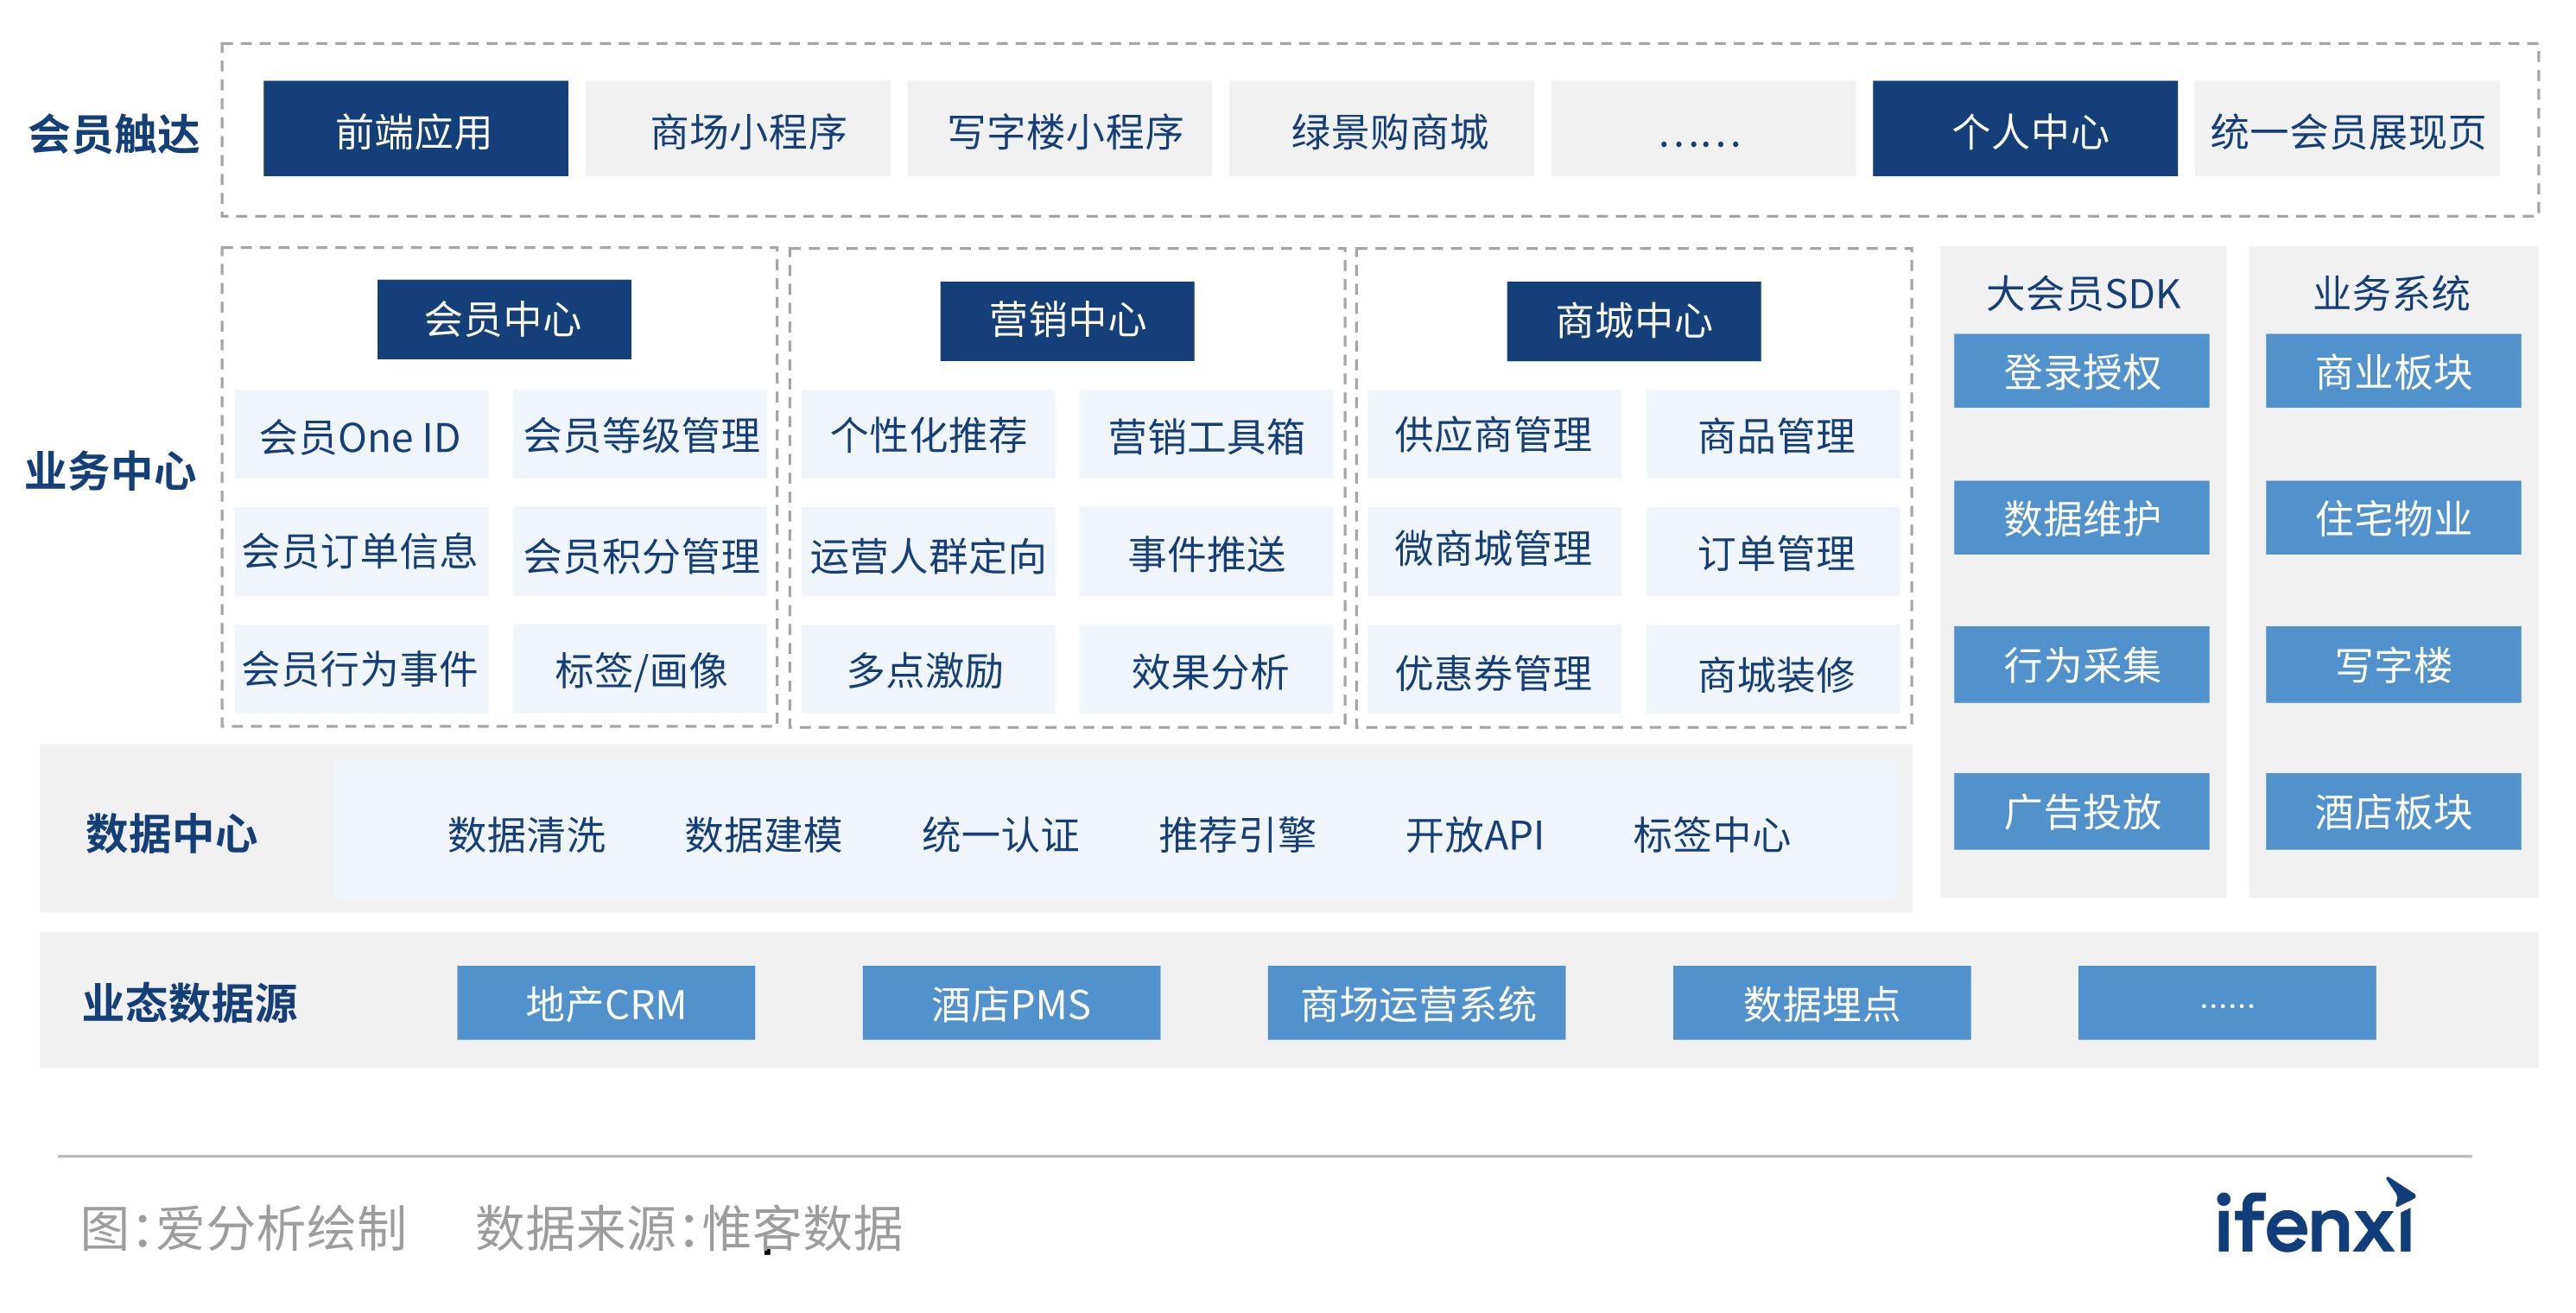 2021愛分析·中國房企數字化實踐報告